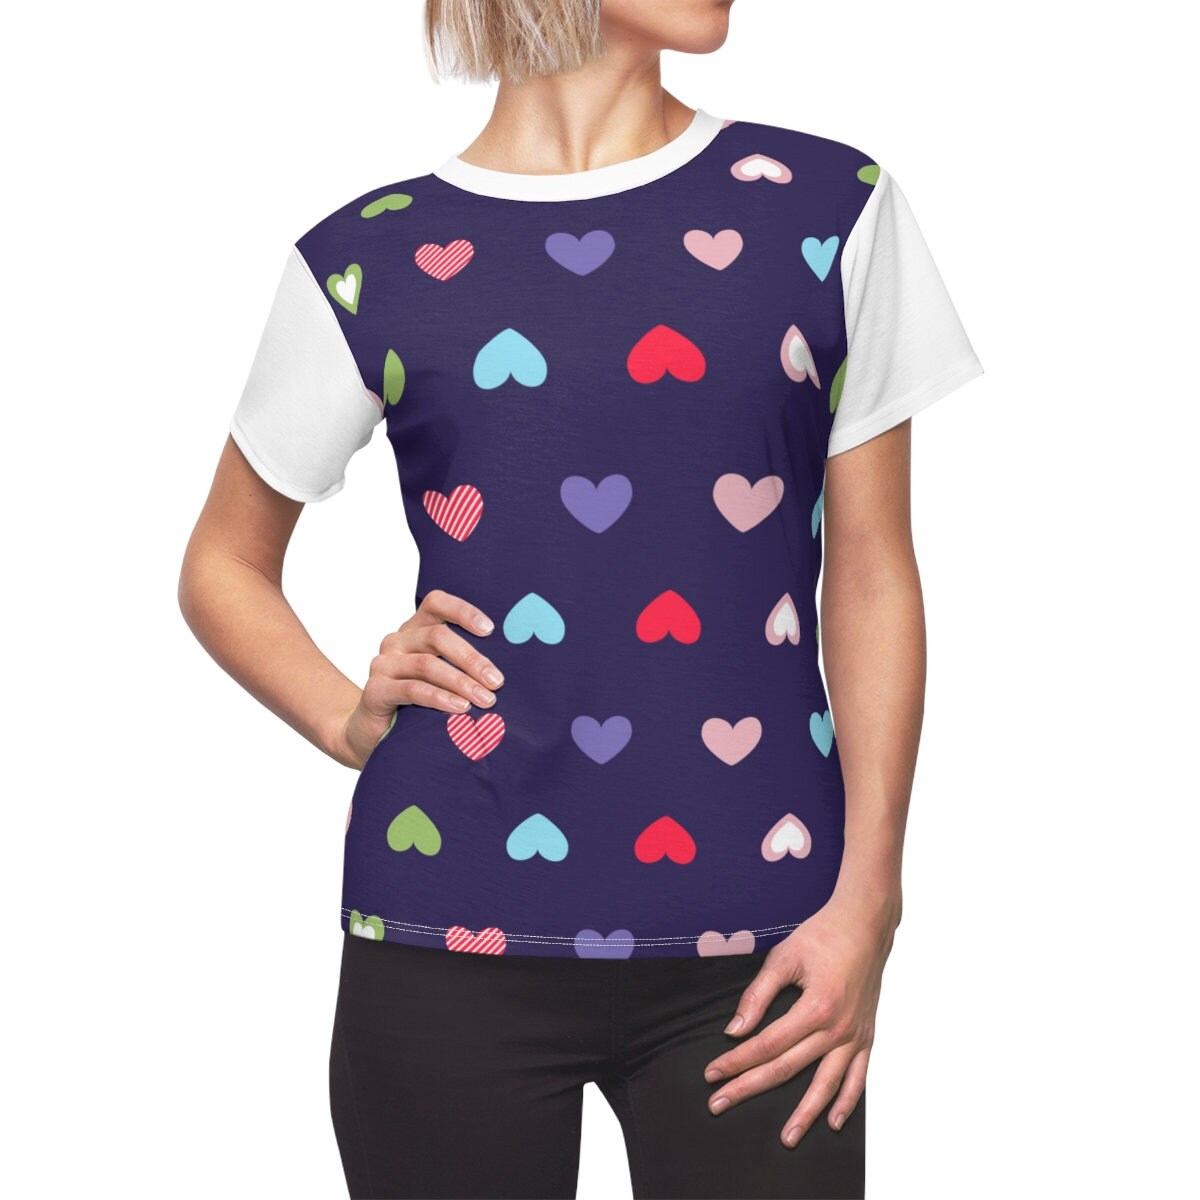 Made in USA, Heart T-shirt, Heart Print T-shirt, Red Heart T-shirt,Pink Heart T-shirt, Blue Heart Tshirt, Heart Print shirt, Heart Poka Dot